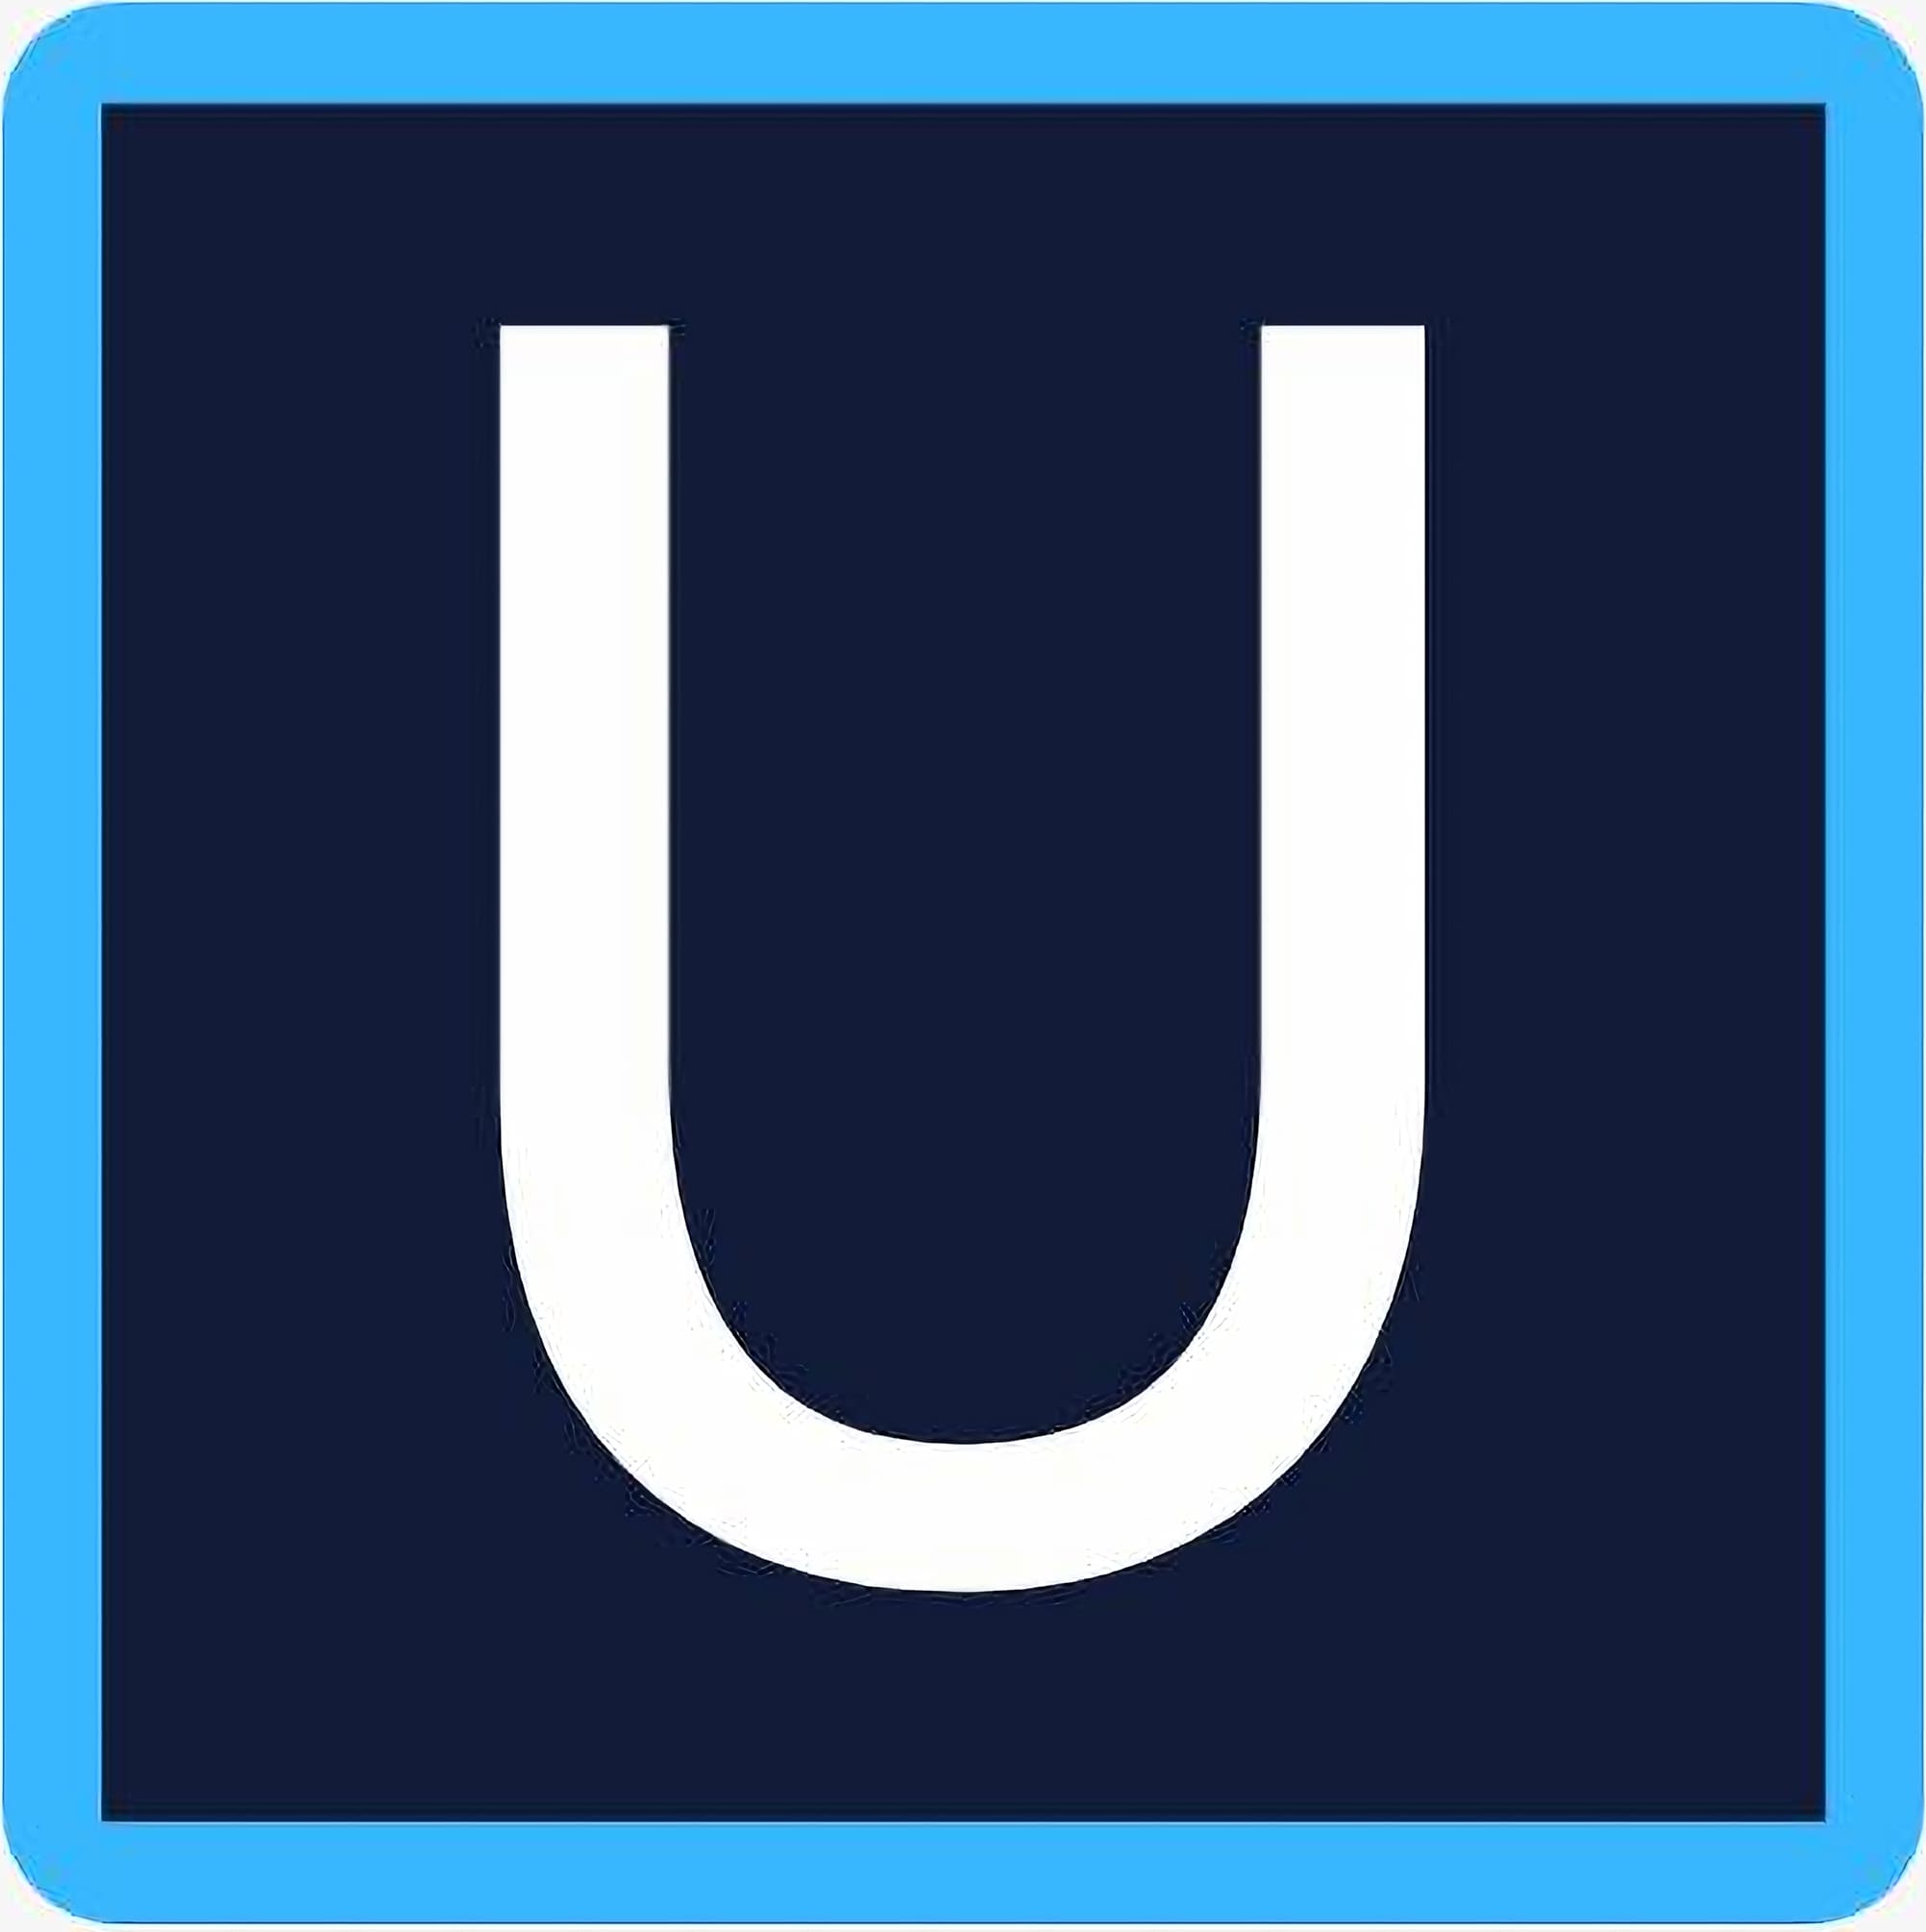 UpscalePics's logo